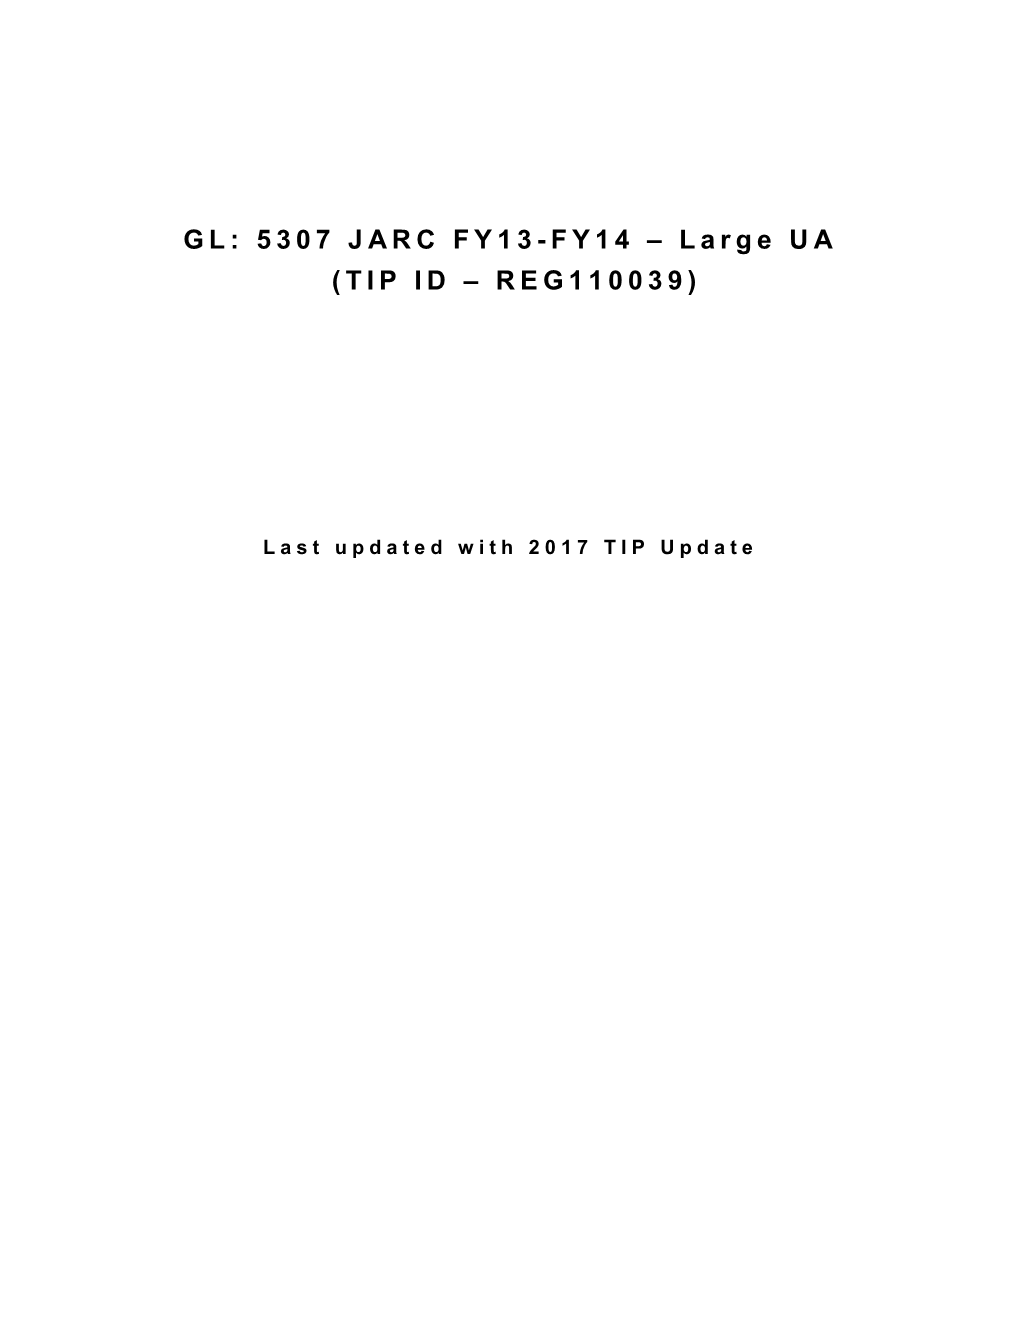 GL: 5307 JARC FY13-FY14 – Large UA (TIP ID – REG110039)